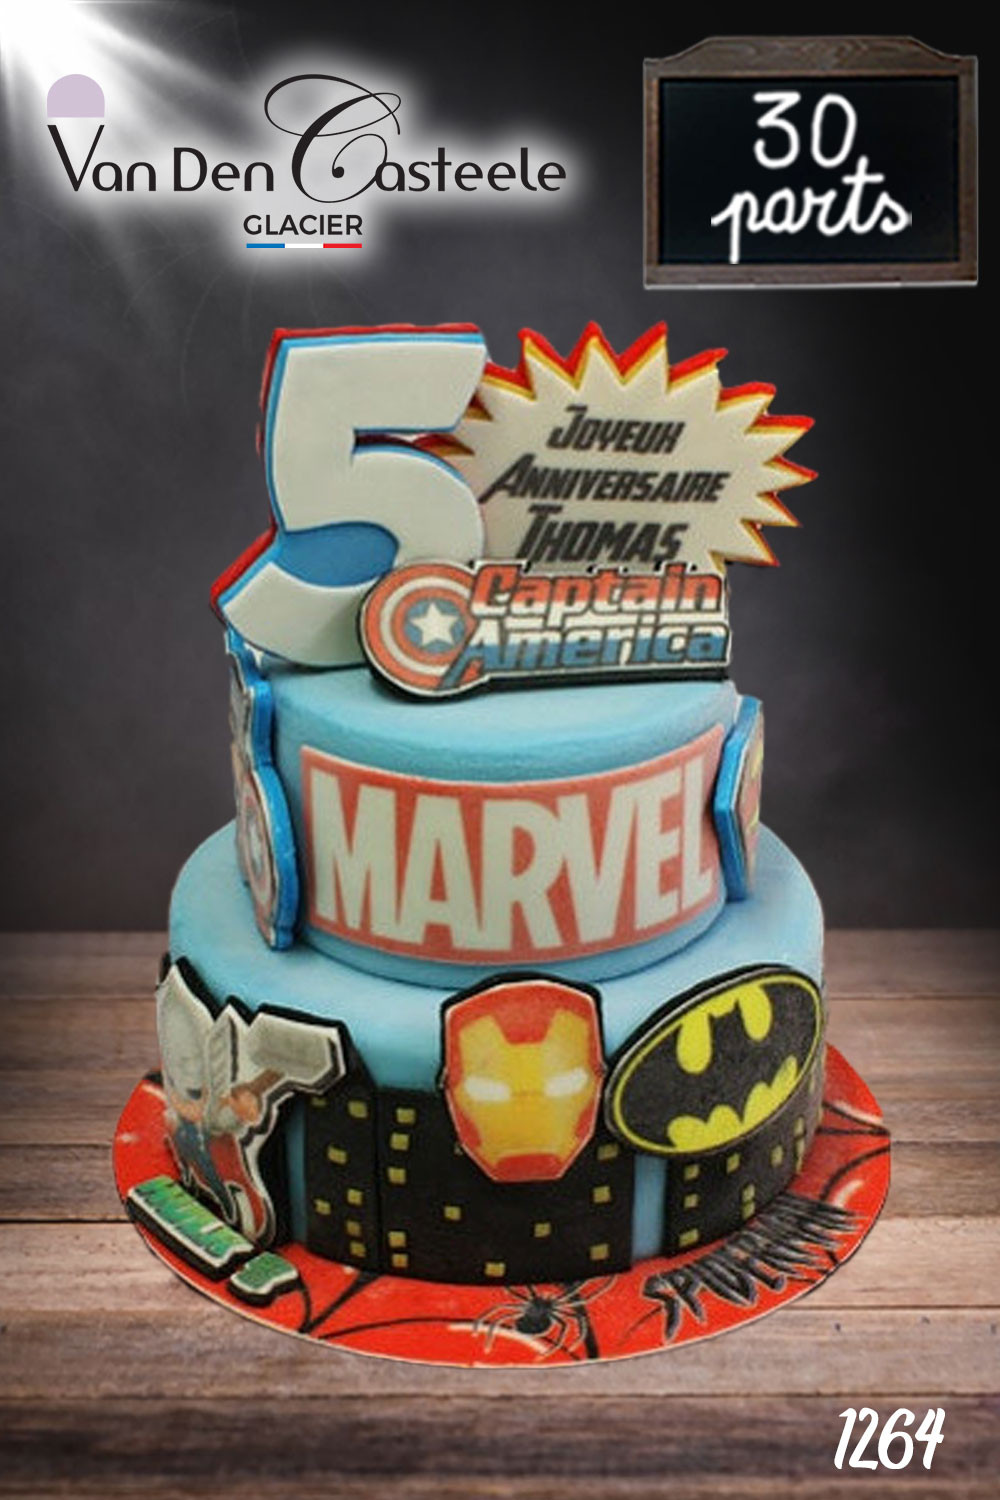 Commander votre gâteau d'anniversaire Marvel en ligne